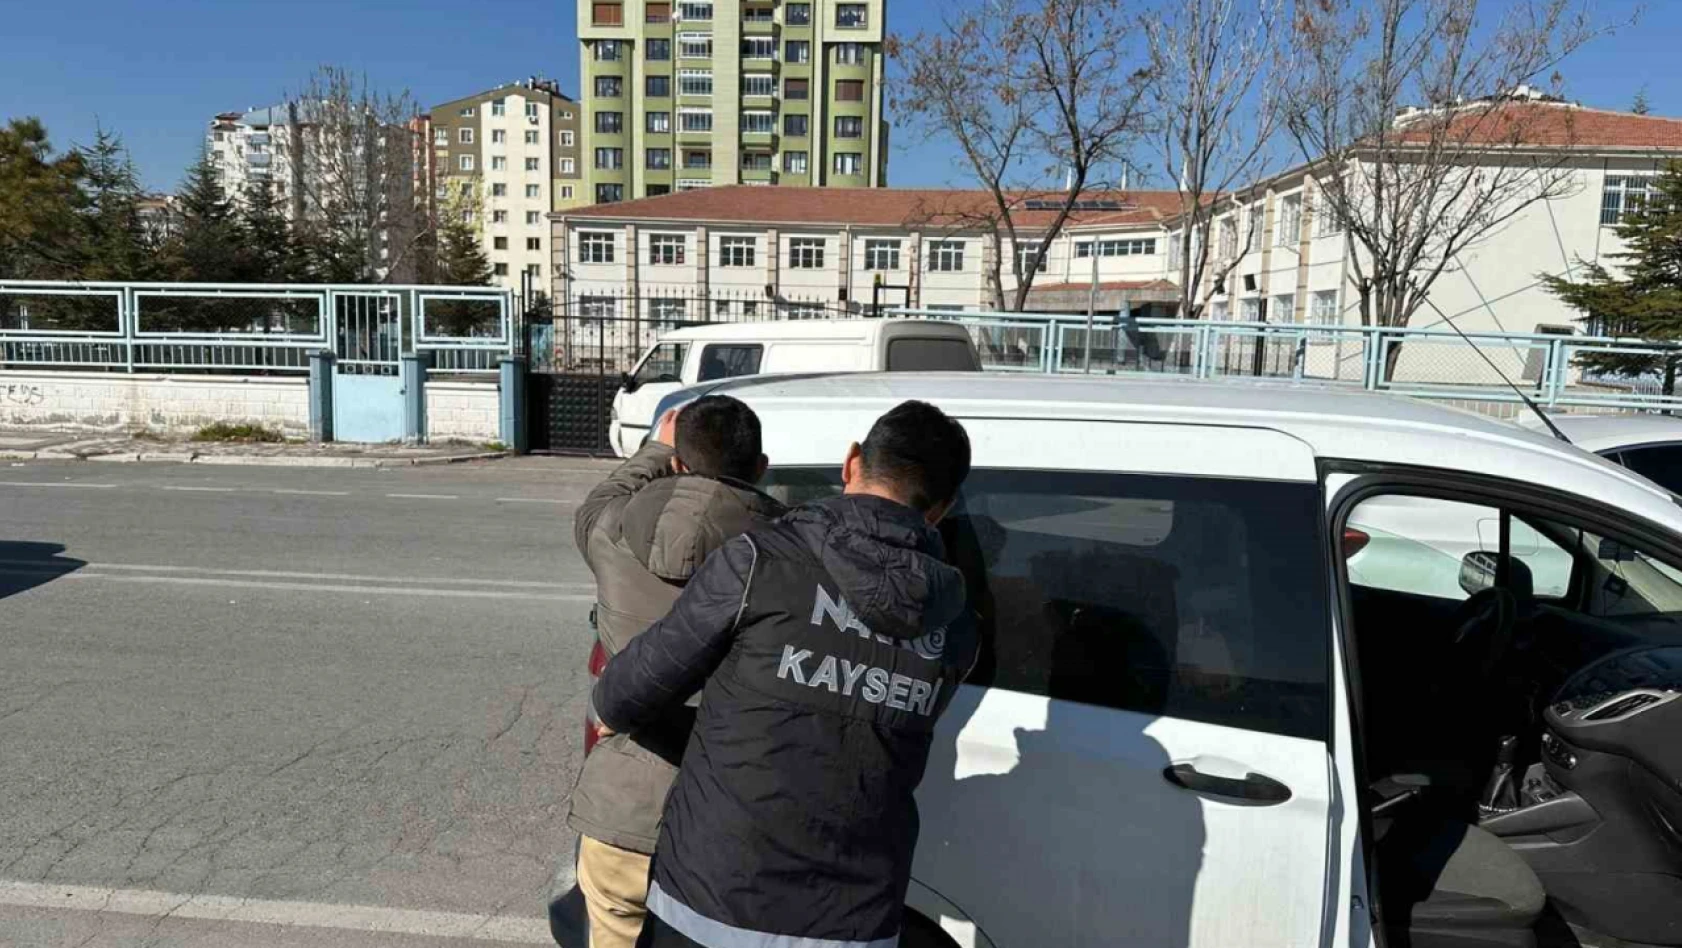 Kayseri'de Okullar Uyuşturucuya Karşı Korunuyor